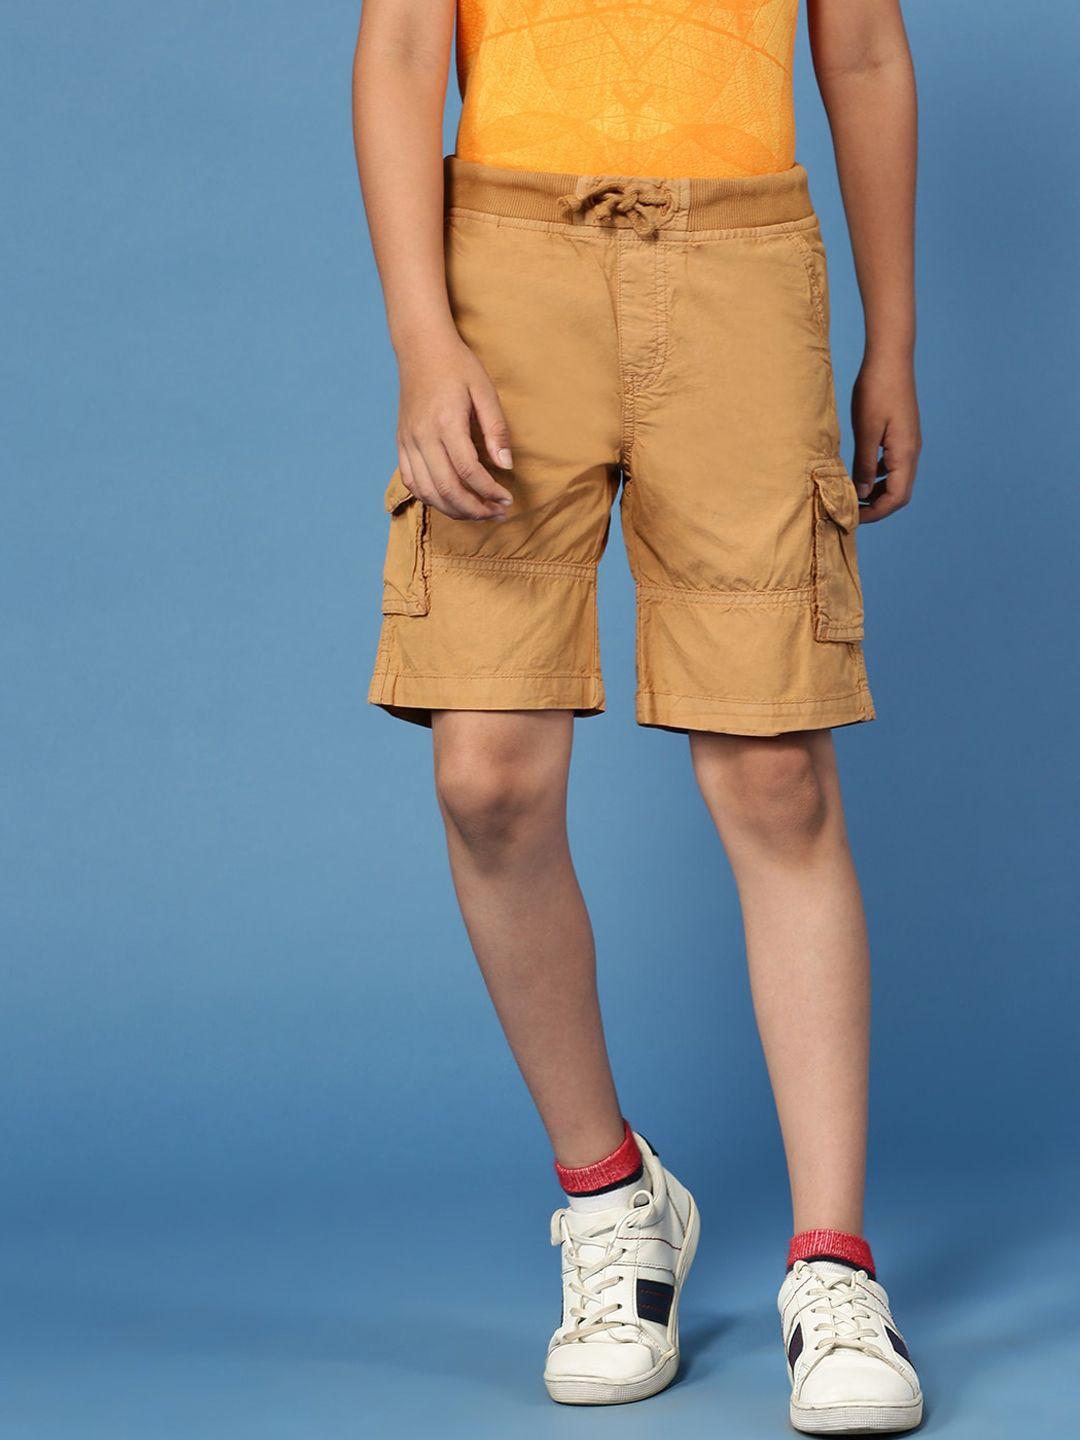 pipin-boys-cotton-cargo-shorts